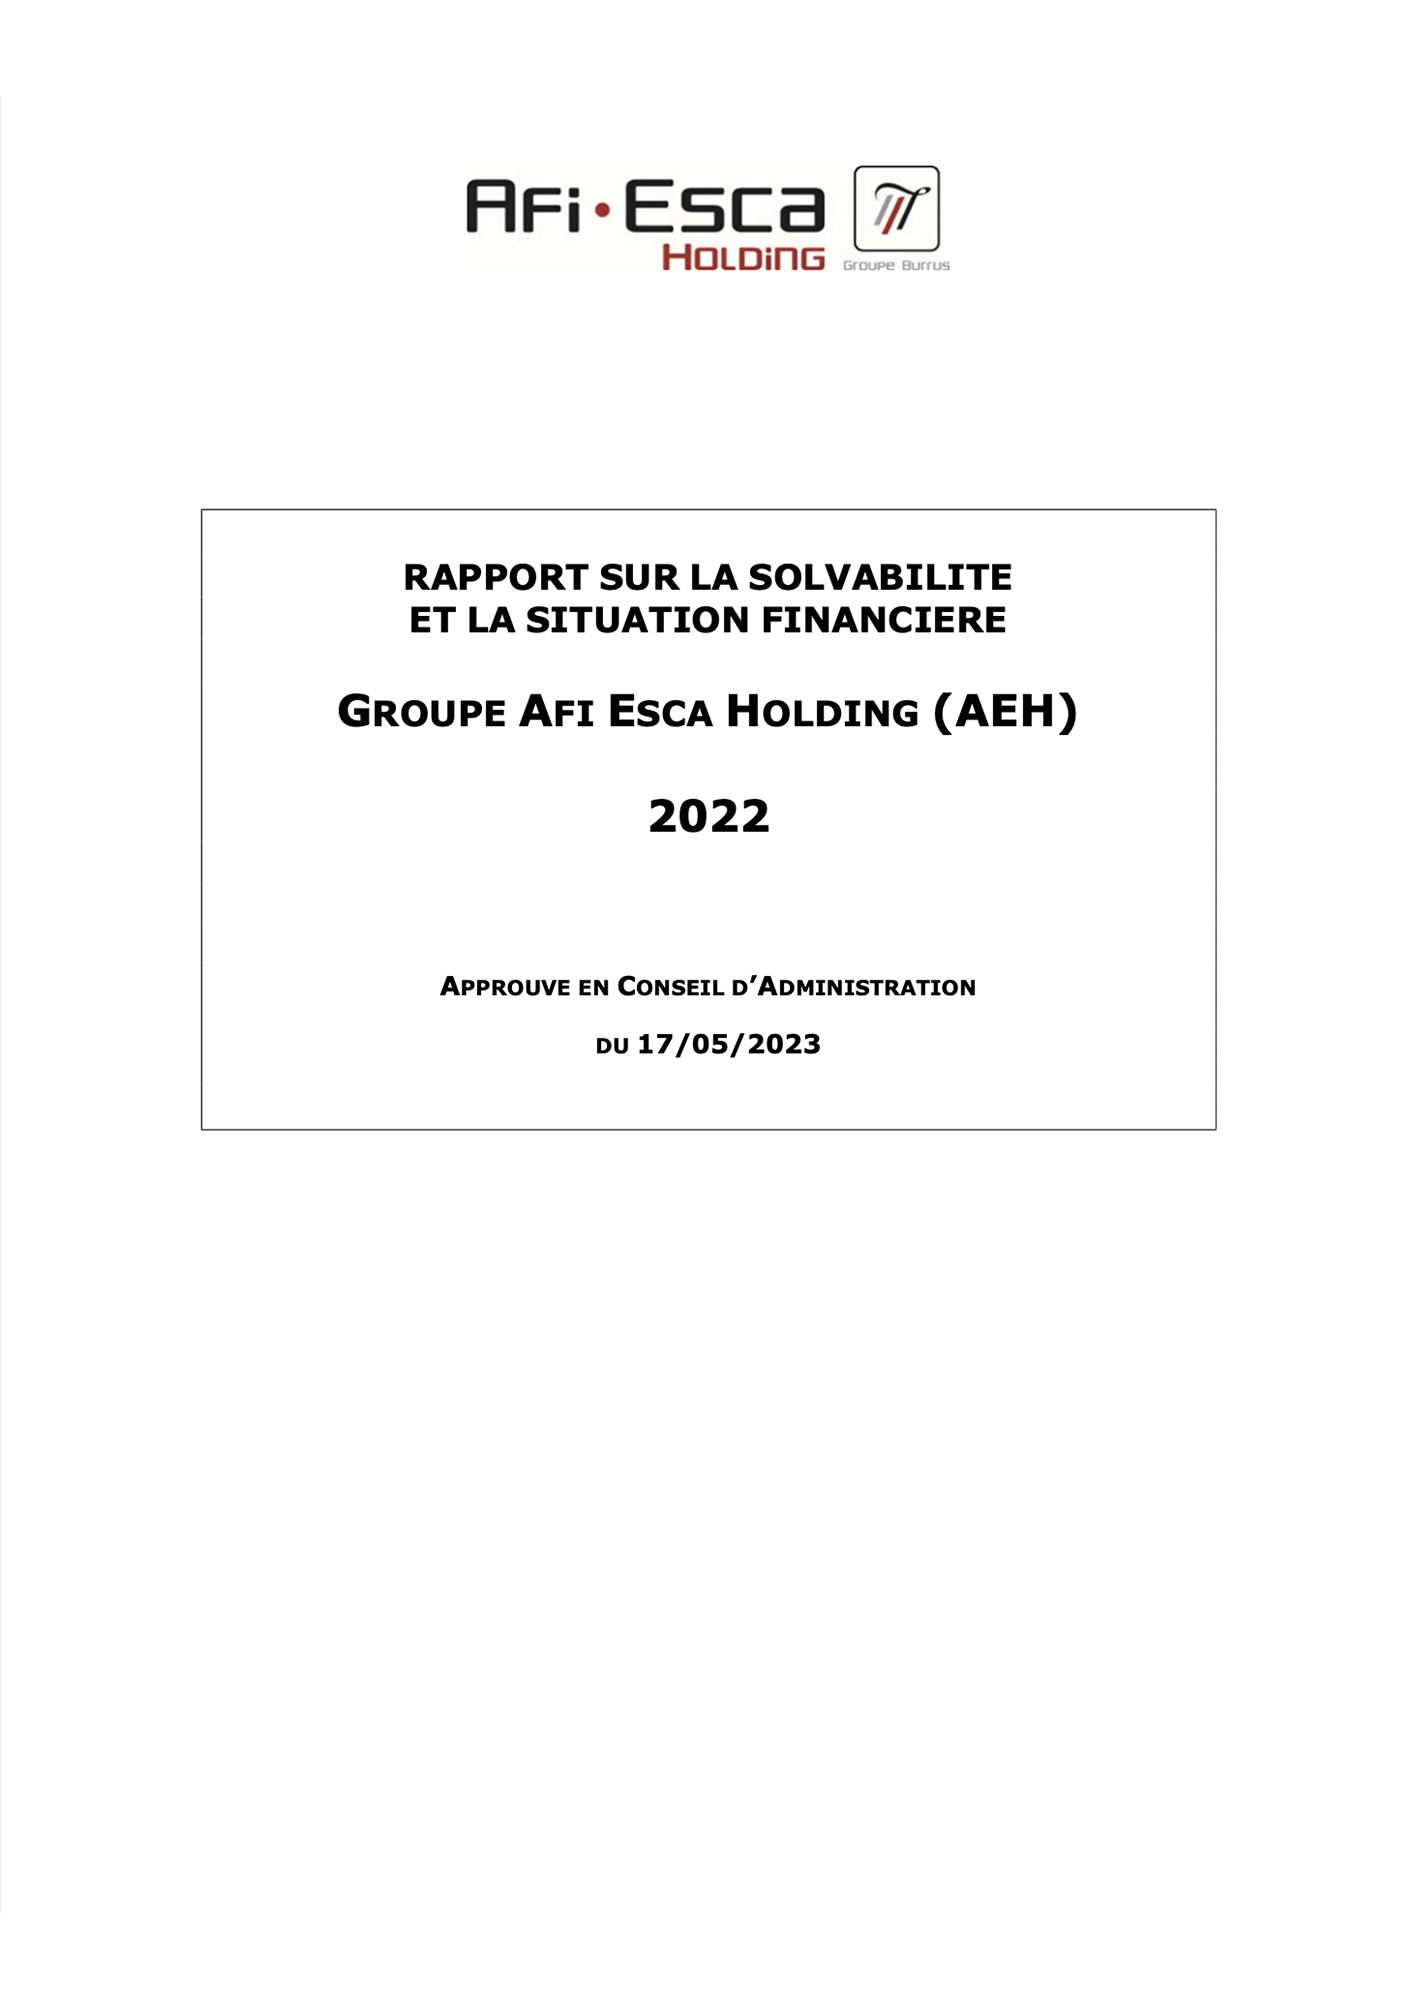 Rapport sur la solvabilité et la situation financière du Groupe Consolide 2022